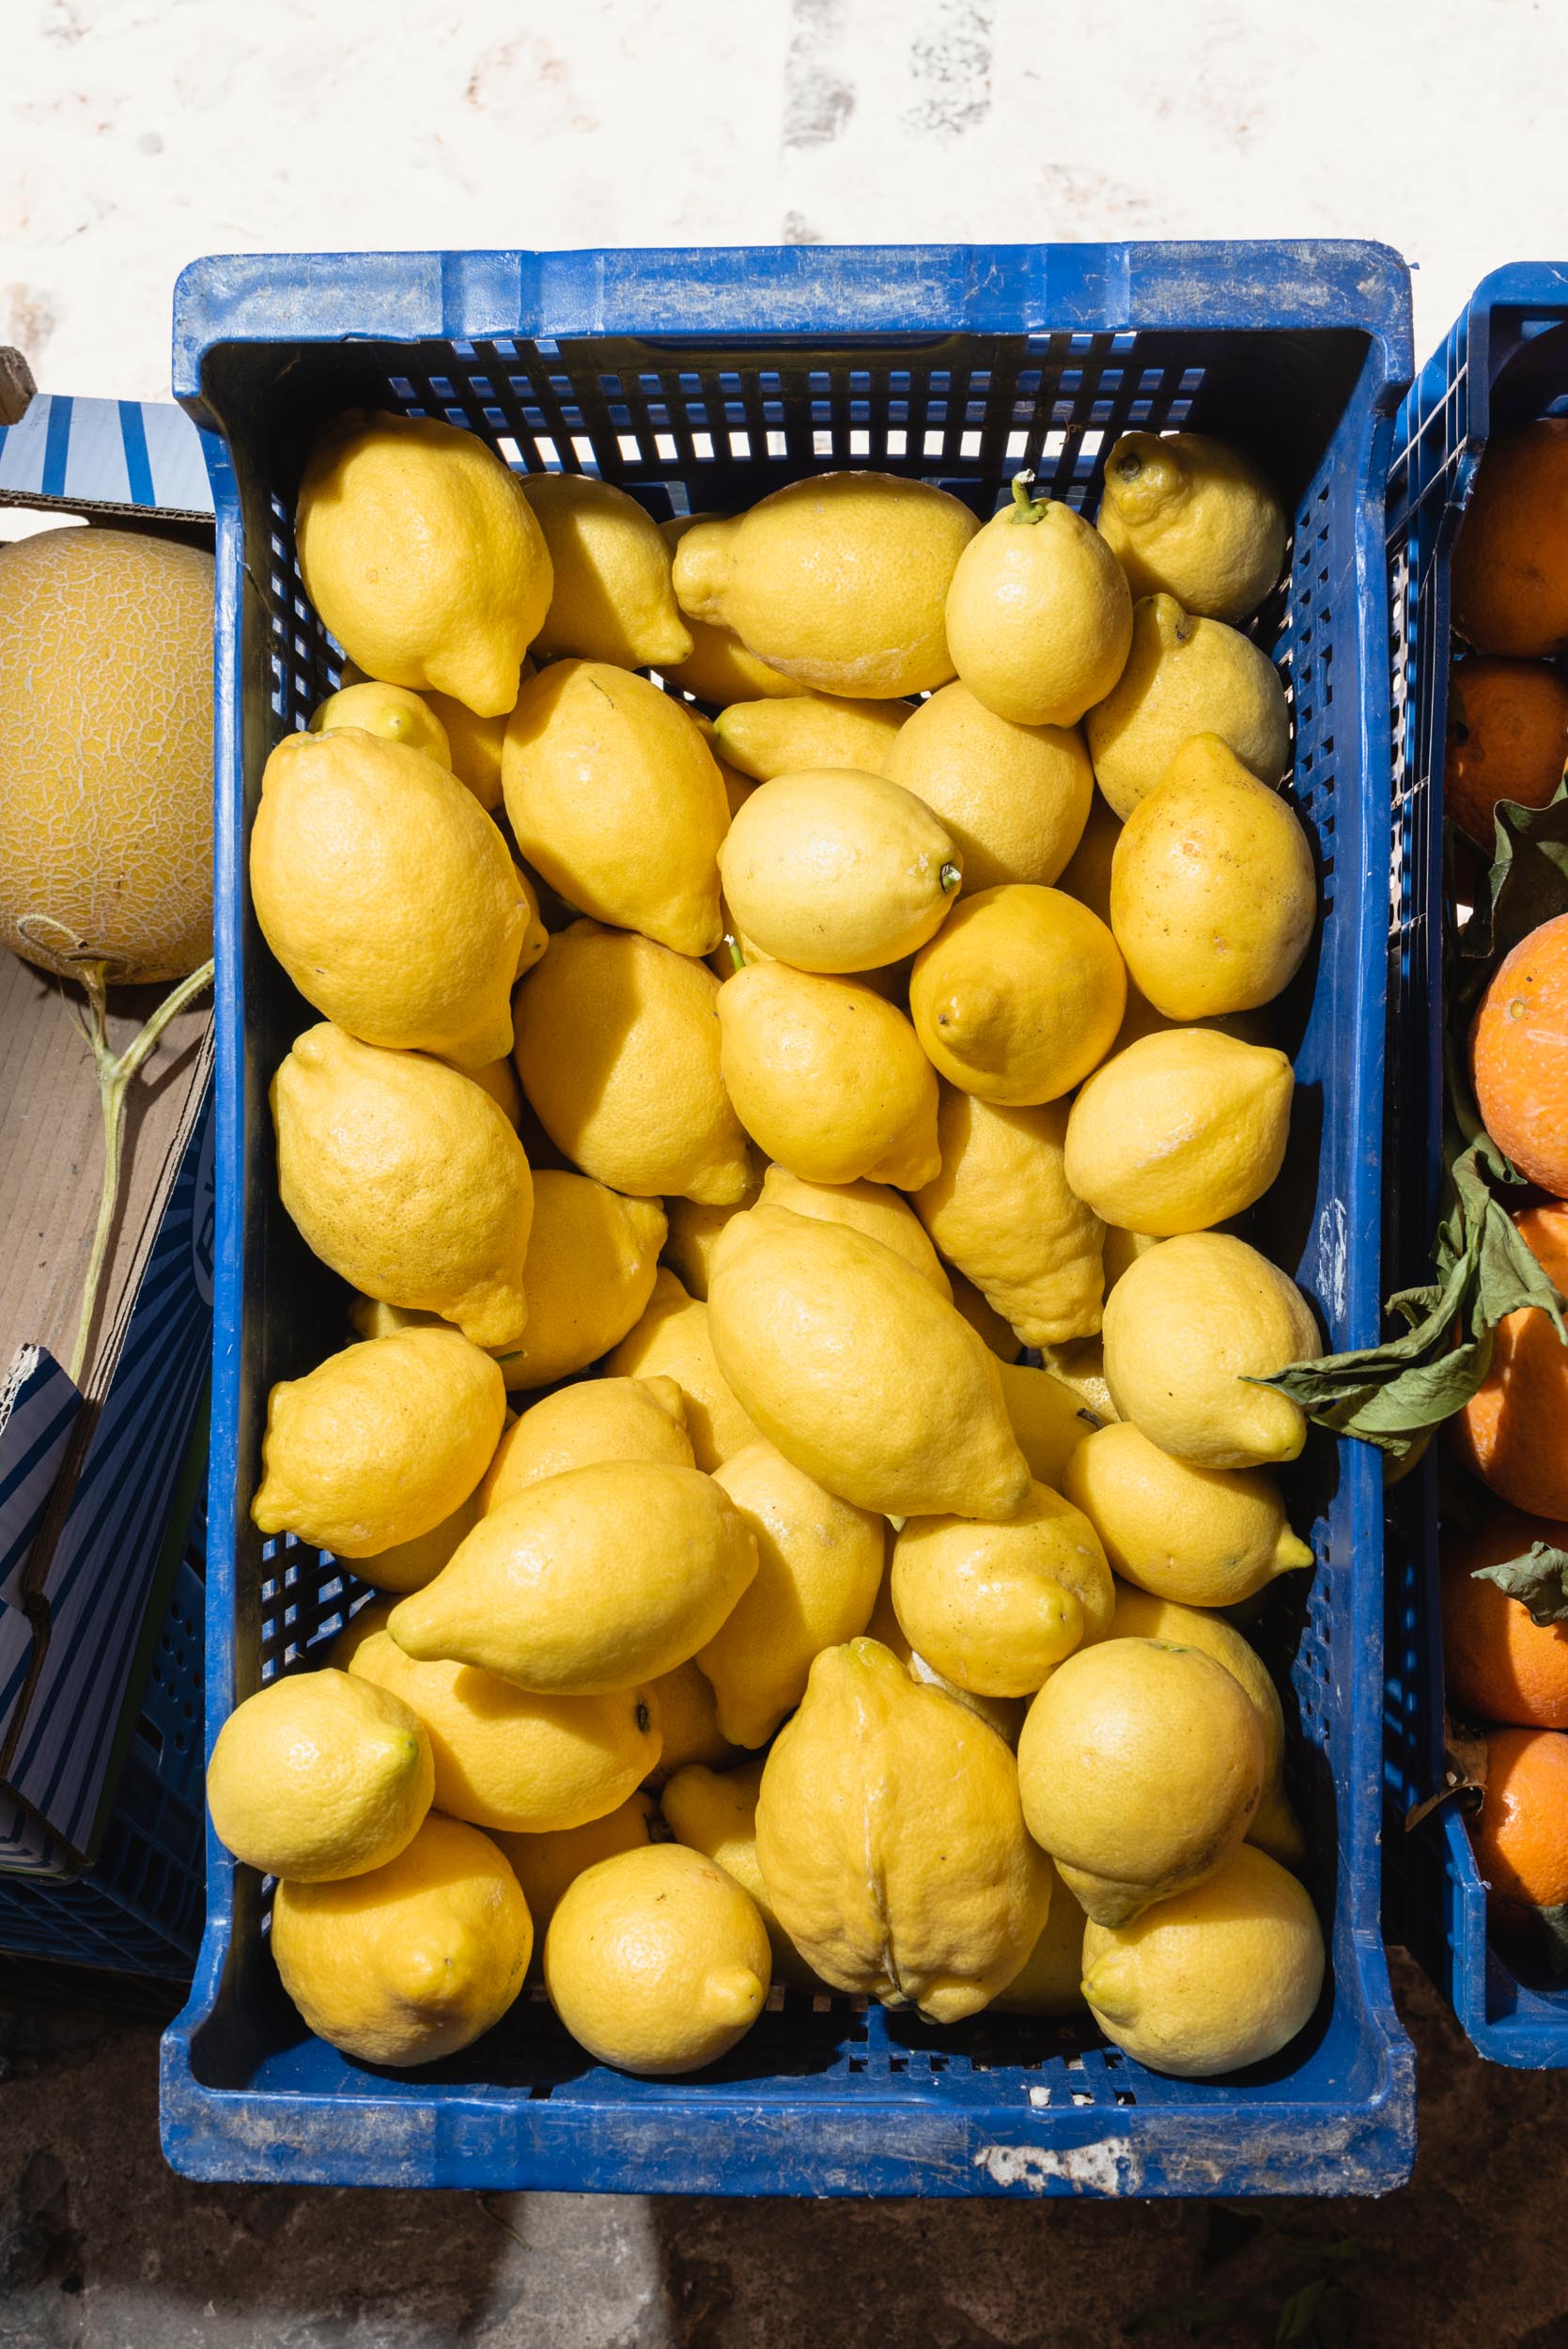 Yellow lemons for sale in blue bin